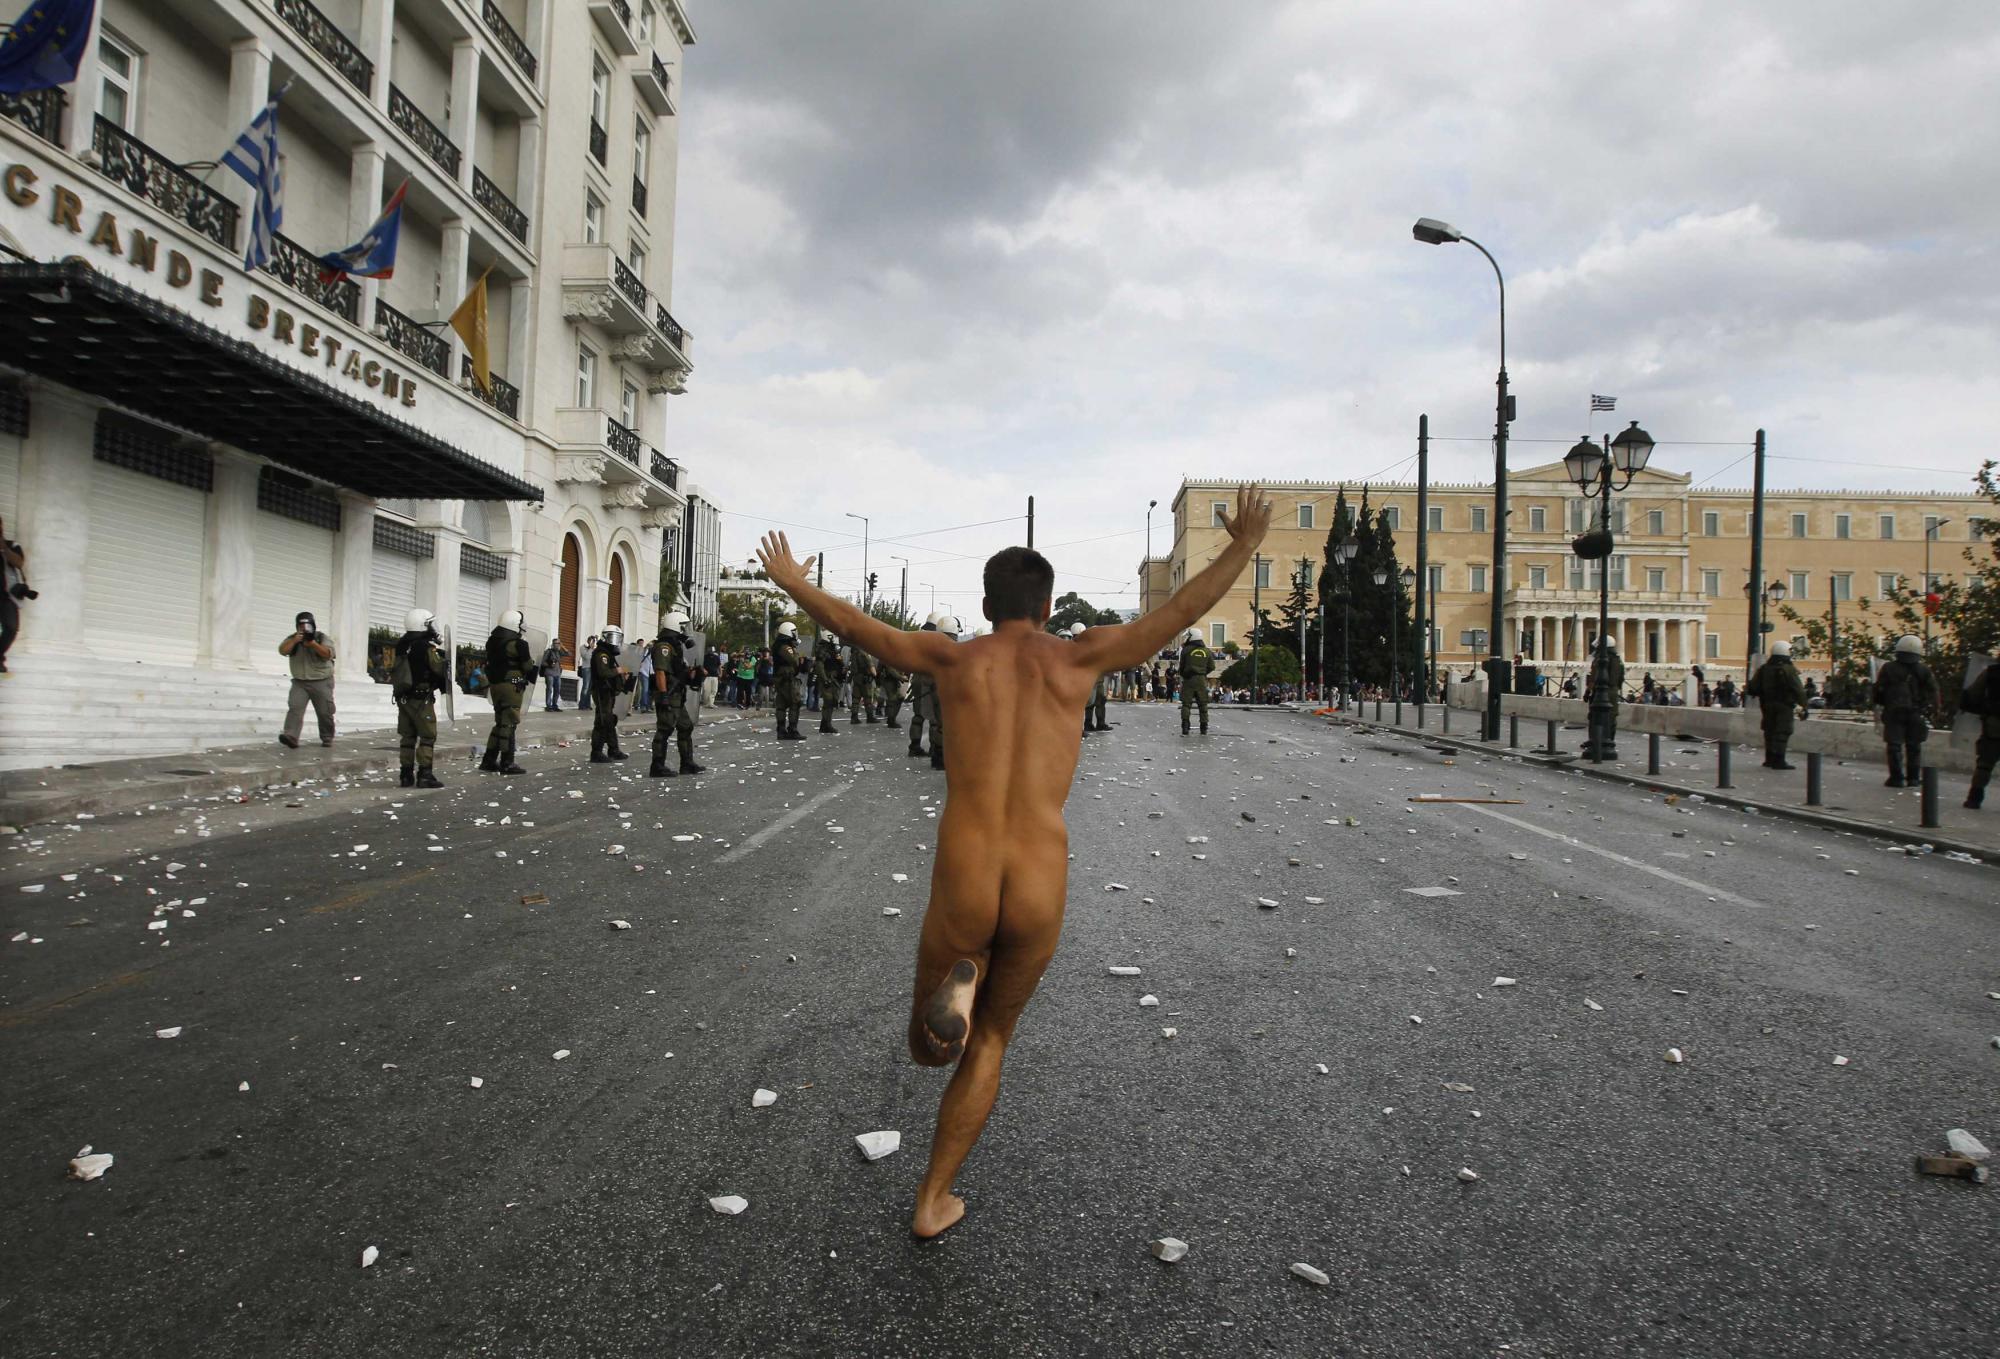 裸奔、烧旗、骚乱 默克尔访希腊遭5万人抗议被喻希特勒